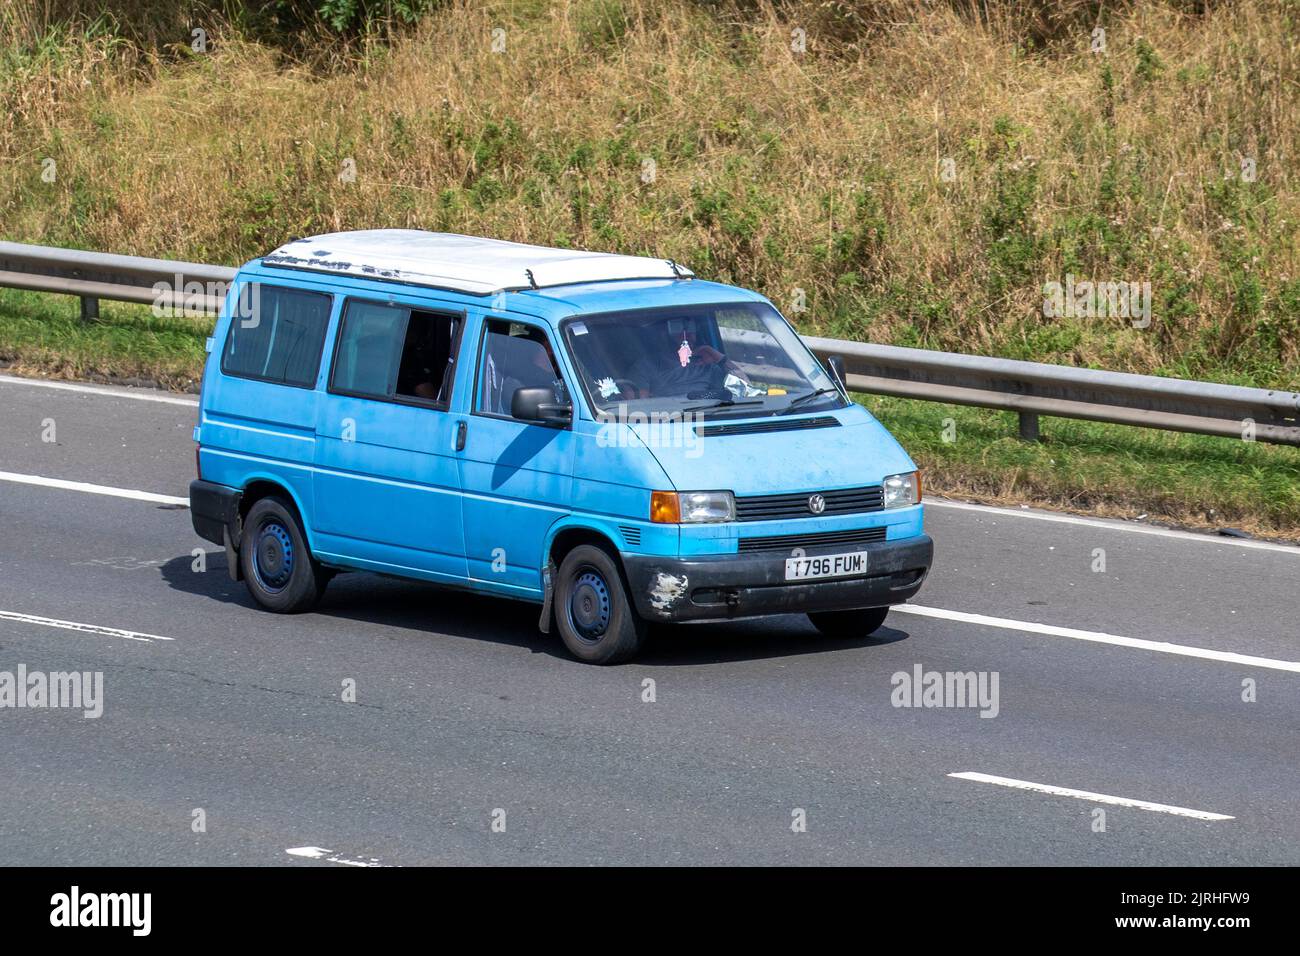 1999 90s, années quatre-vingt-dix bleu VW Volkswagen transporter 1000 SWB 1,9 TD; voyager sur l'autoroute M6 Royaume-Uni; voyager sur l'autoroute M6, Royaume-Uni Banque D'Images